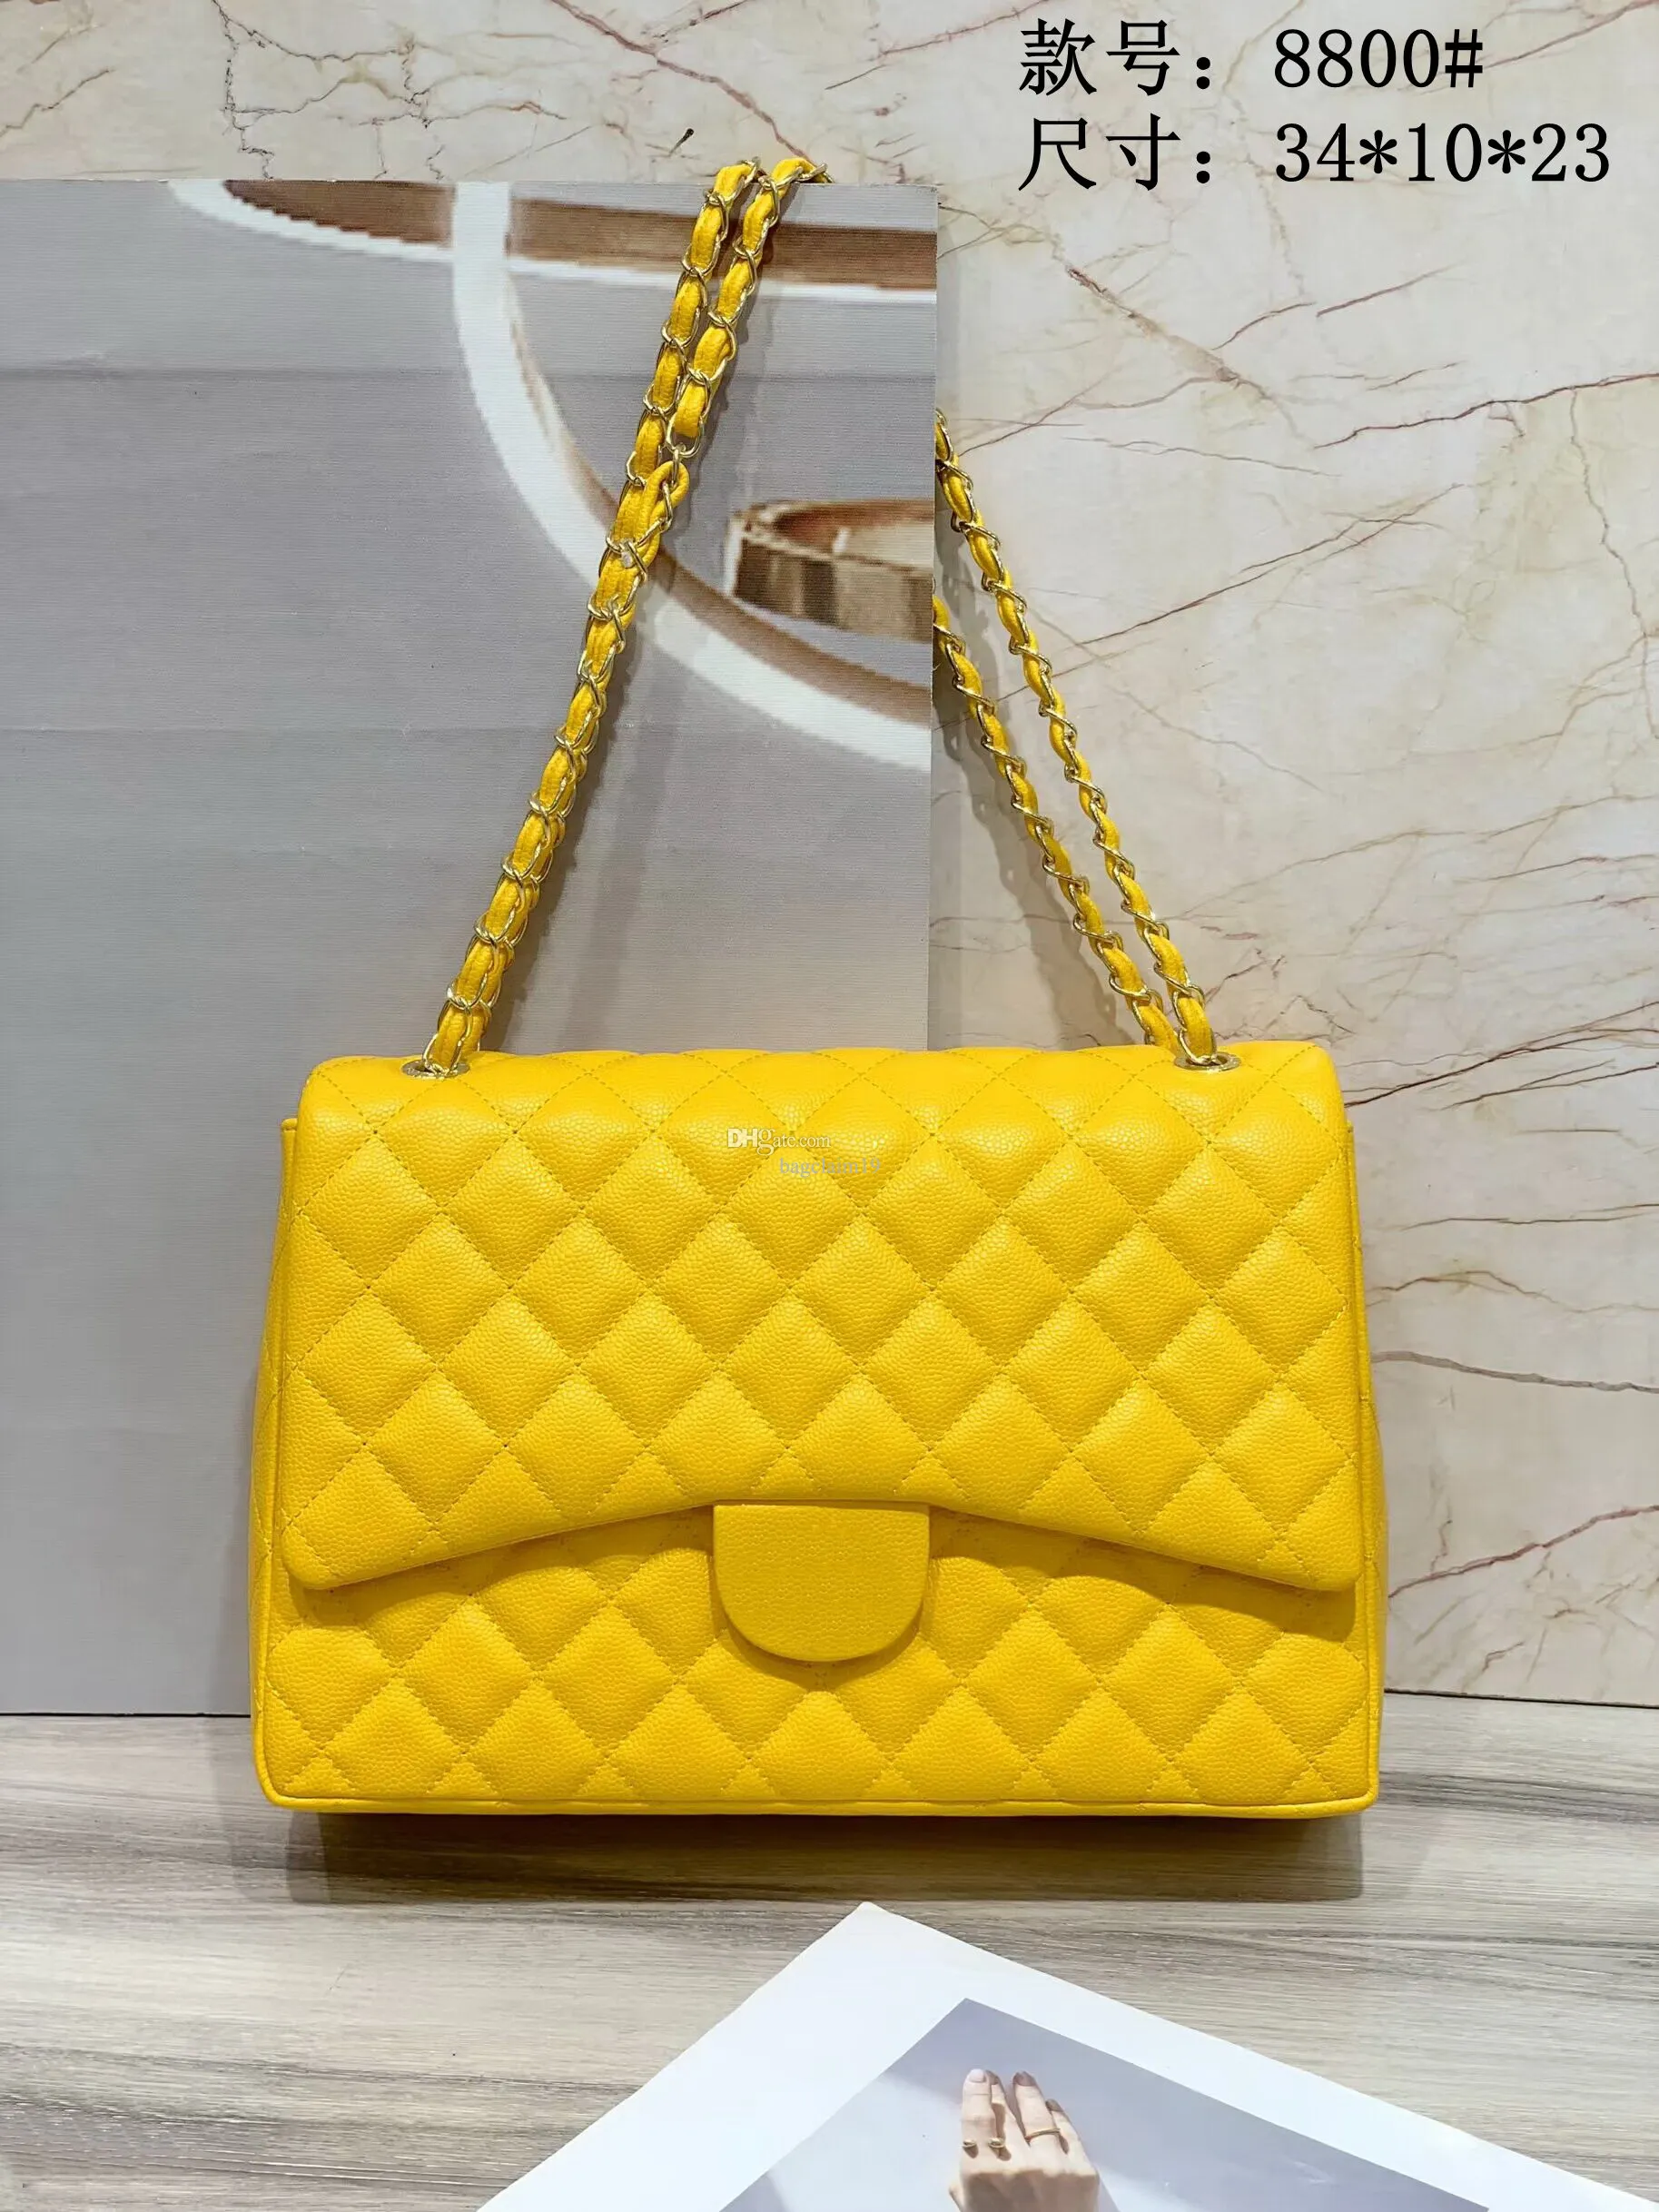 Marka tote çanta tasarımcı çanta gerçek deri aaa kalite altın zincirler havyar çocuk messenger çanta hobo çanta crossbody çift flep kadın çantalı çanta cüzdan ld2#8800